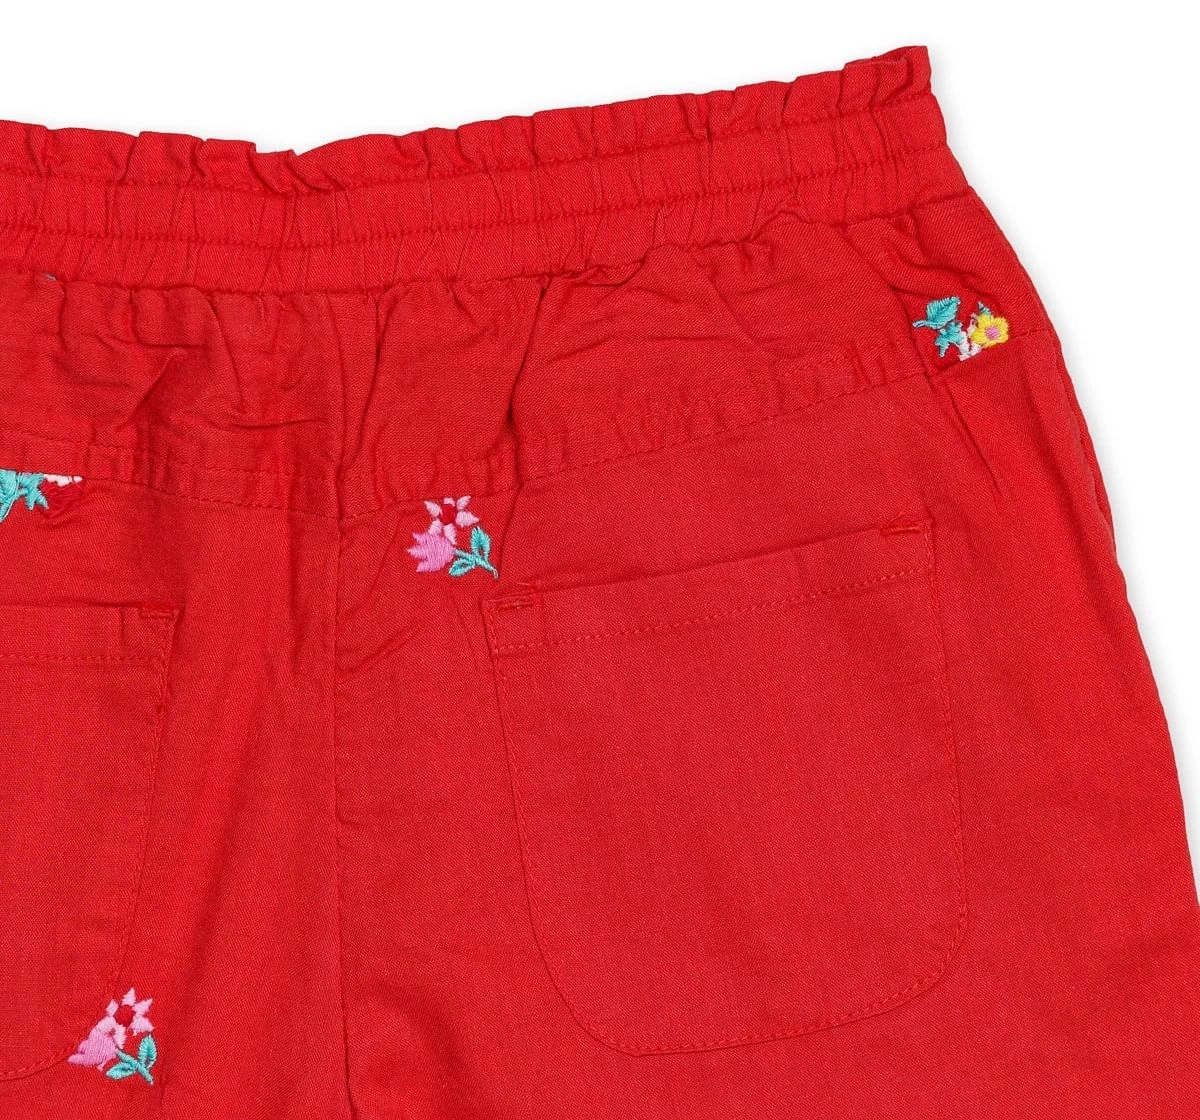 H By Hamleys Blended Trouser Pack of 1 Girls Red